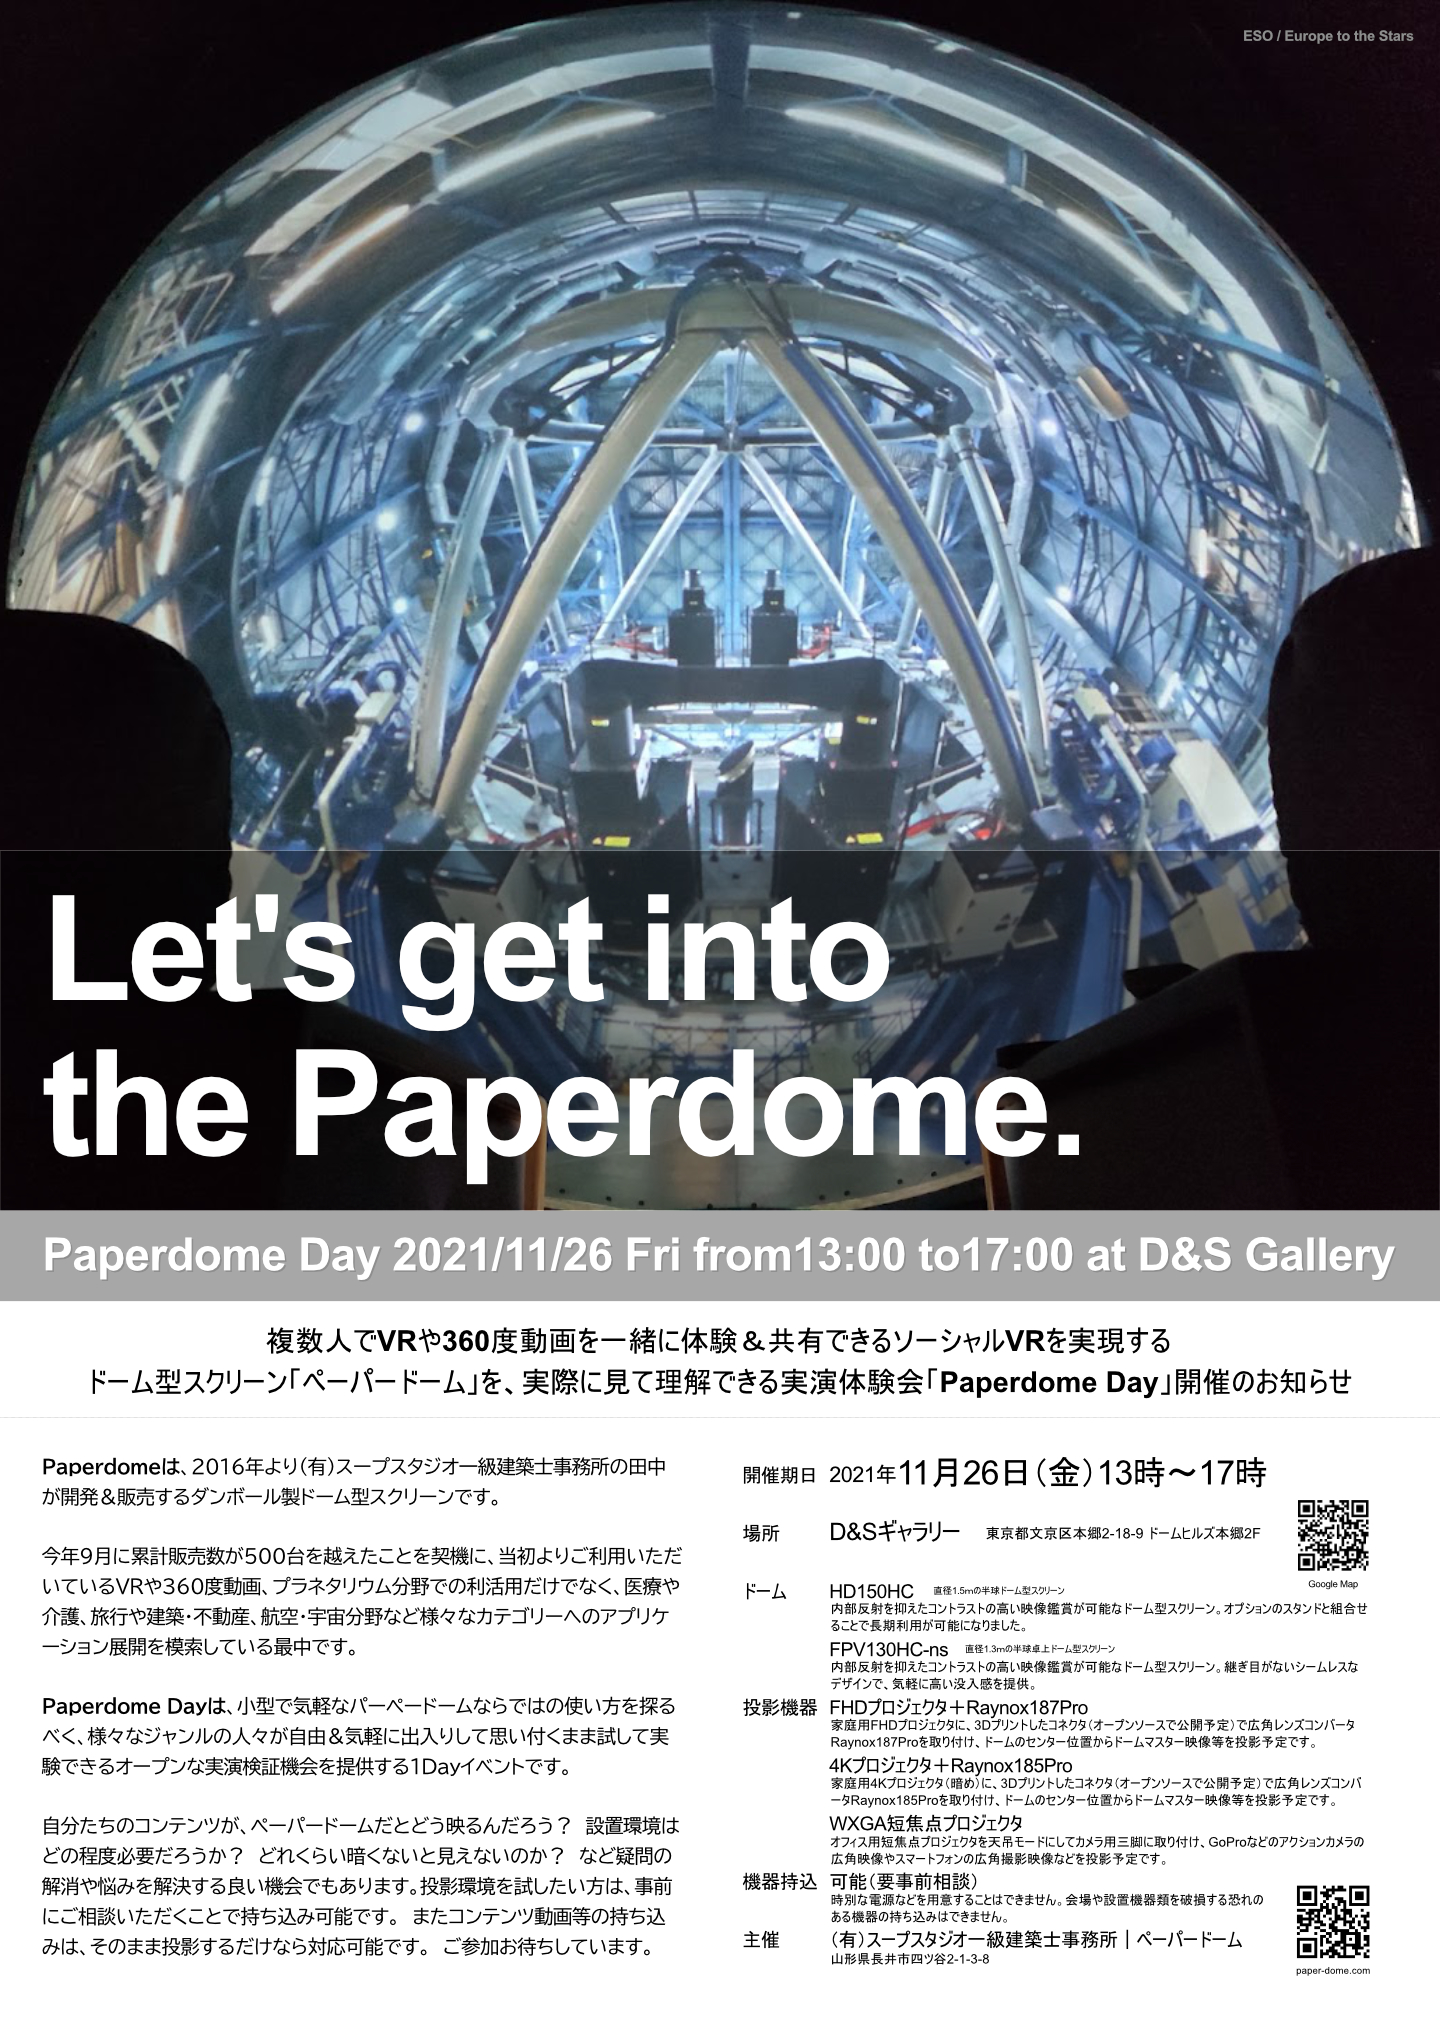 ペーパードームの実演体験会Paperdome Dayのお知らせ